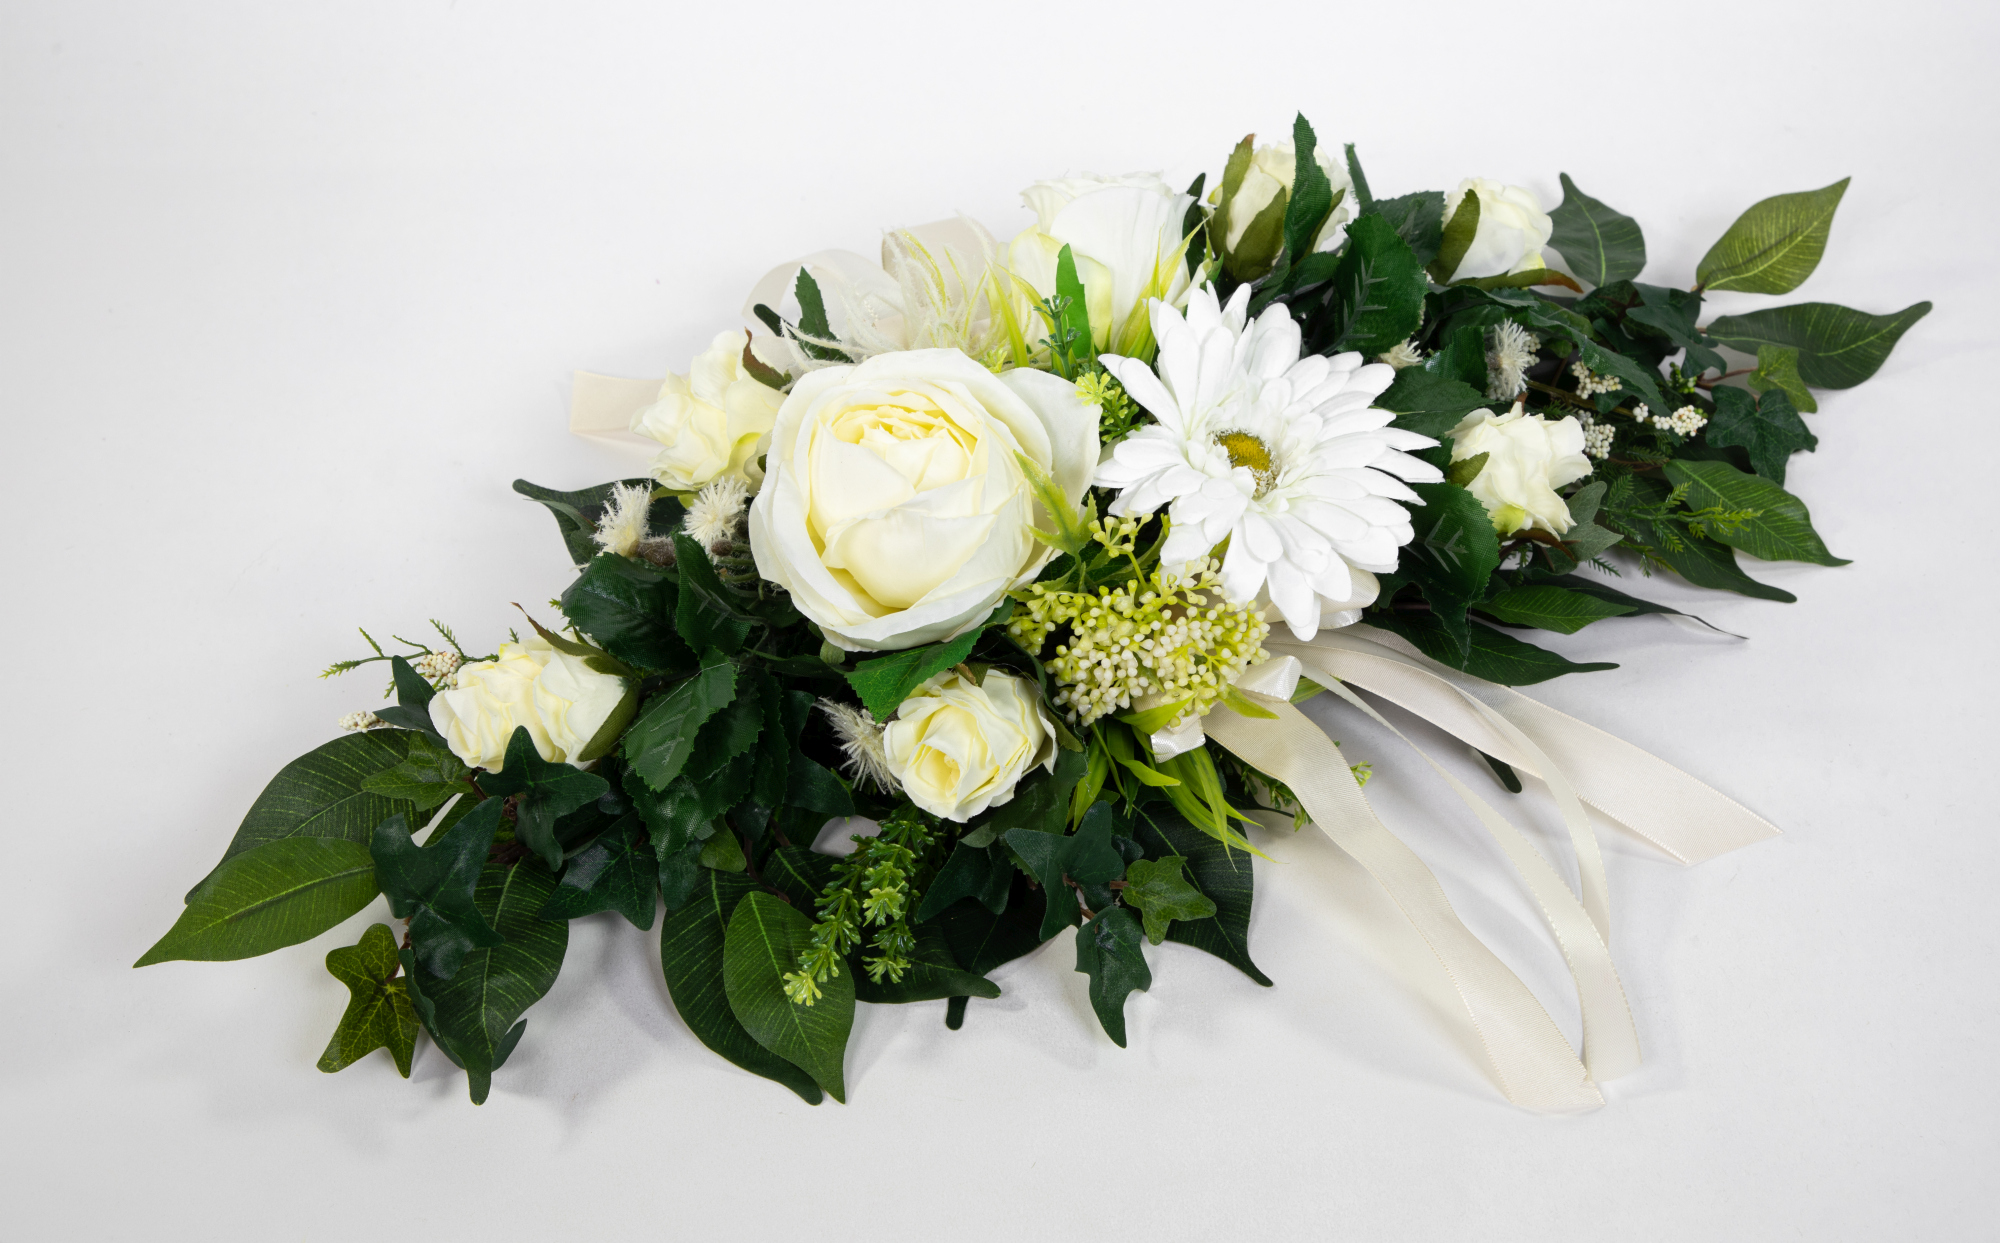 Tischgesteck länglich 60cm weiß mit Gerbera und Rosen Kunstblumen künstliche Blumen